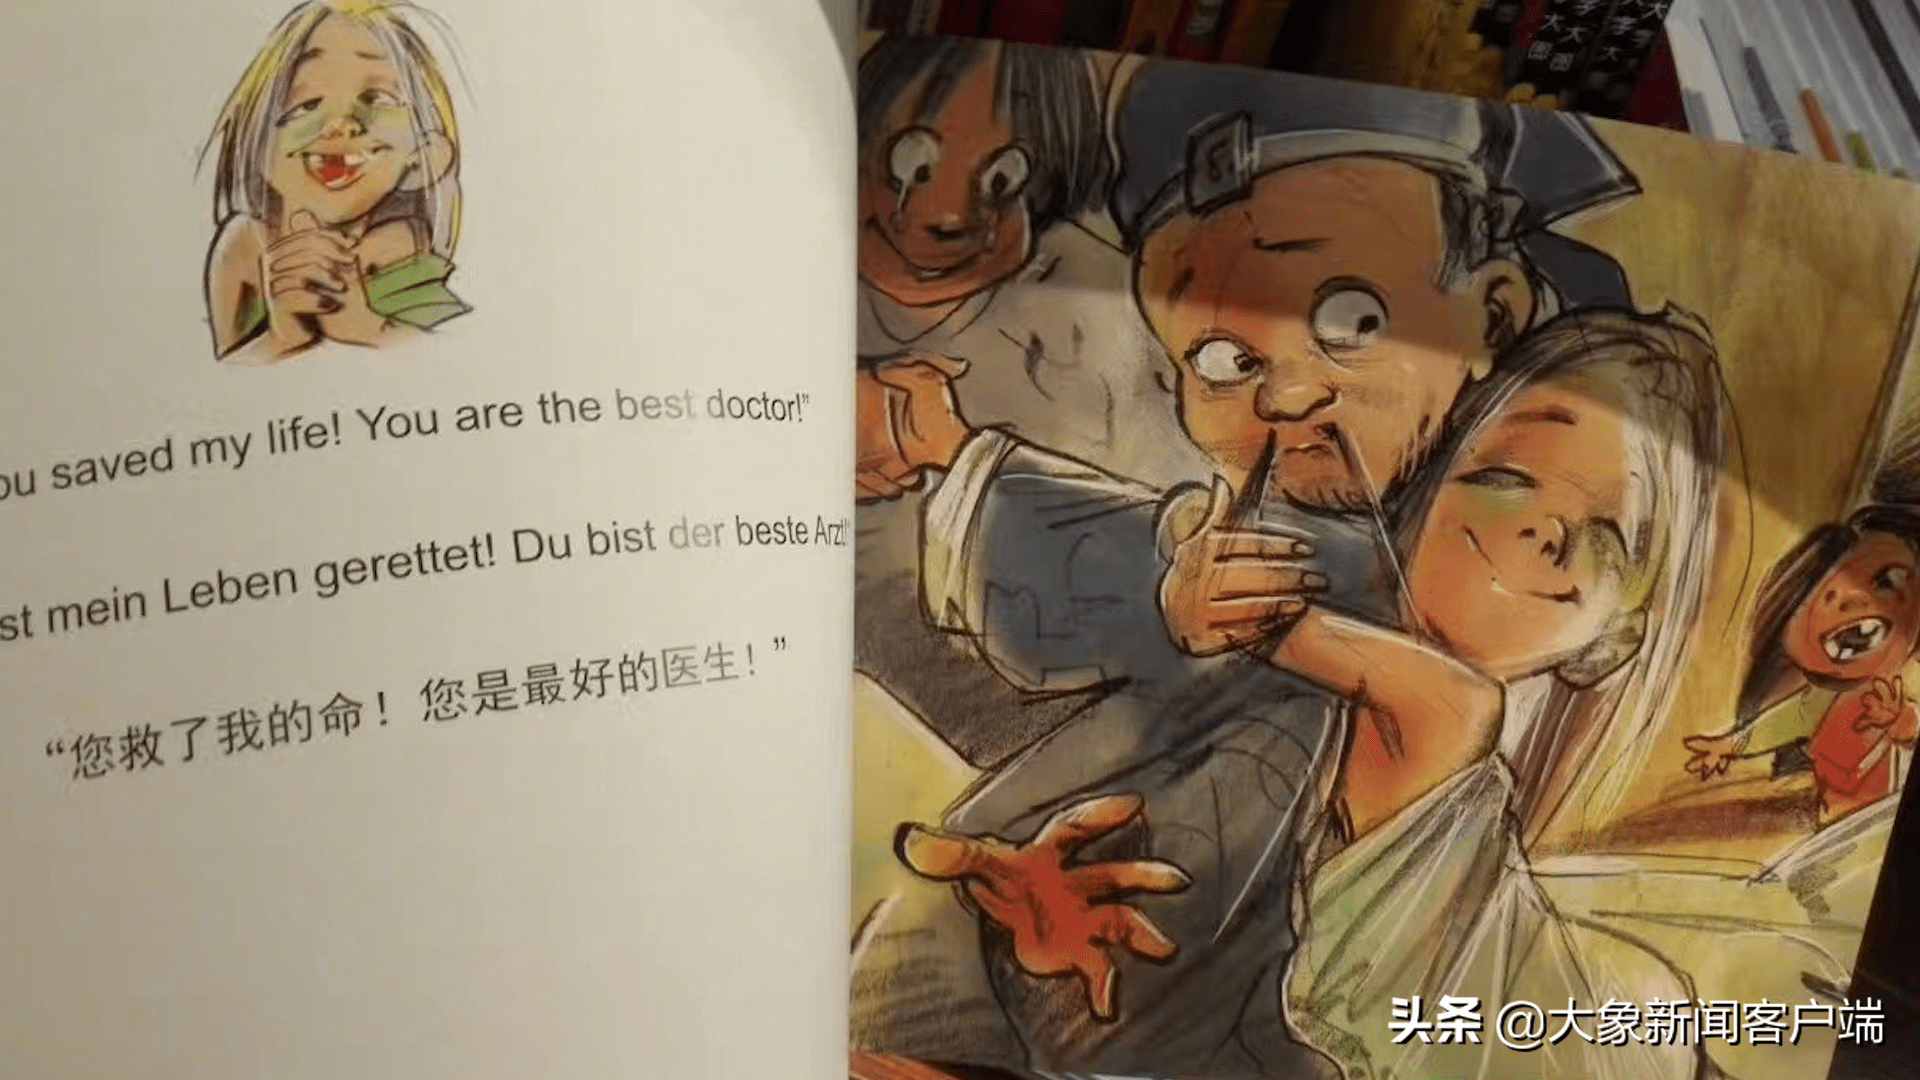 “扁鹊治病”儿童绘本插图暧昧引争议，作者以往作品也被指露骨